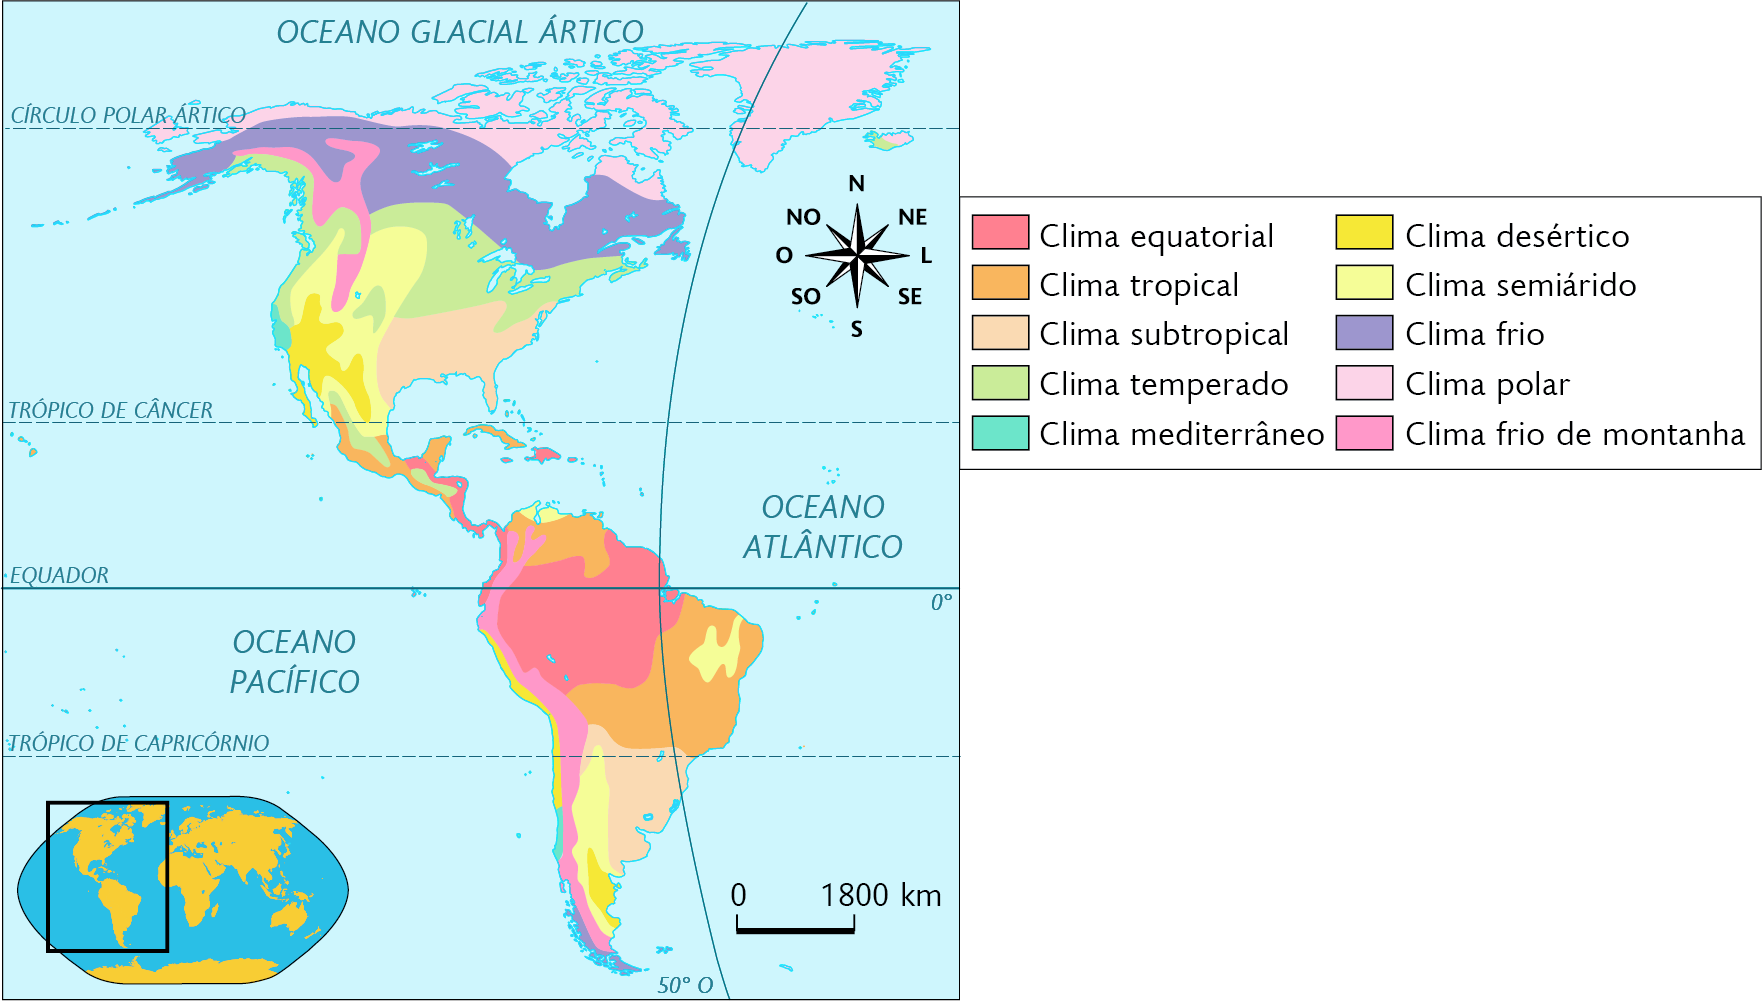 Mapa. Climas da América. Clima equatorial: oeste da América Central e norte da América do Sul. Clima tropical: sul da América do Norte, parte da América Central e norte da América do Sul. Clima subtropical: sudeste da América do Norte e da América do Sul. Clima temperado: faixa no oeste, norte, porção nordeste e áreas no sul da América do Norte. Clima mediterrâneo: pequena área no oeste da América do Norte e na costa sudoeste da América do Sul. Clima desértico: sudoeste da América do Norte, costa oeste e área sul da América do Sul. Clima semiárido: centro e sudoeste da América do Norte, pequena área no norte e região no nordeste e sudoeste da América do Sul. Clima frio: faixa no norte da América do Norte e no extremo sul da América do Sul. Clima polar: faixa no norte da América do Norte. Clima frio de montanha: área dispersa no noroeste da América do Norte e oeste da América do Sul. No canto inferior esquerdo, mapa de localização, planisfério destacando a região descrita. No canto superior direito, a rosa dos ventos e na parte inferior, a escala: 1800 quilômetros por centímetro.